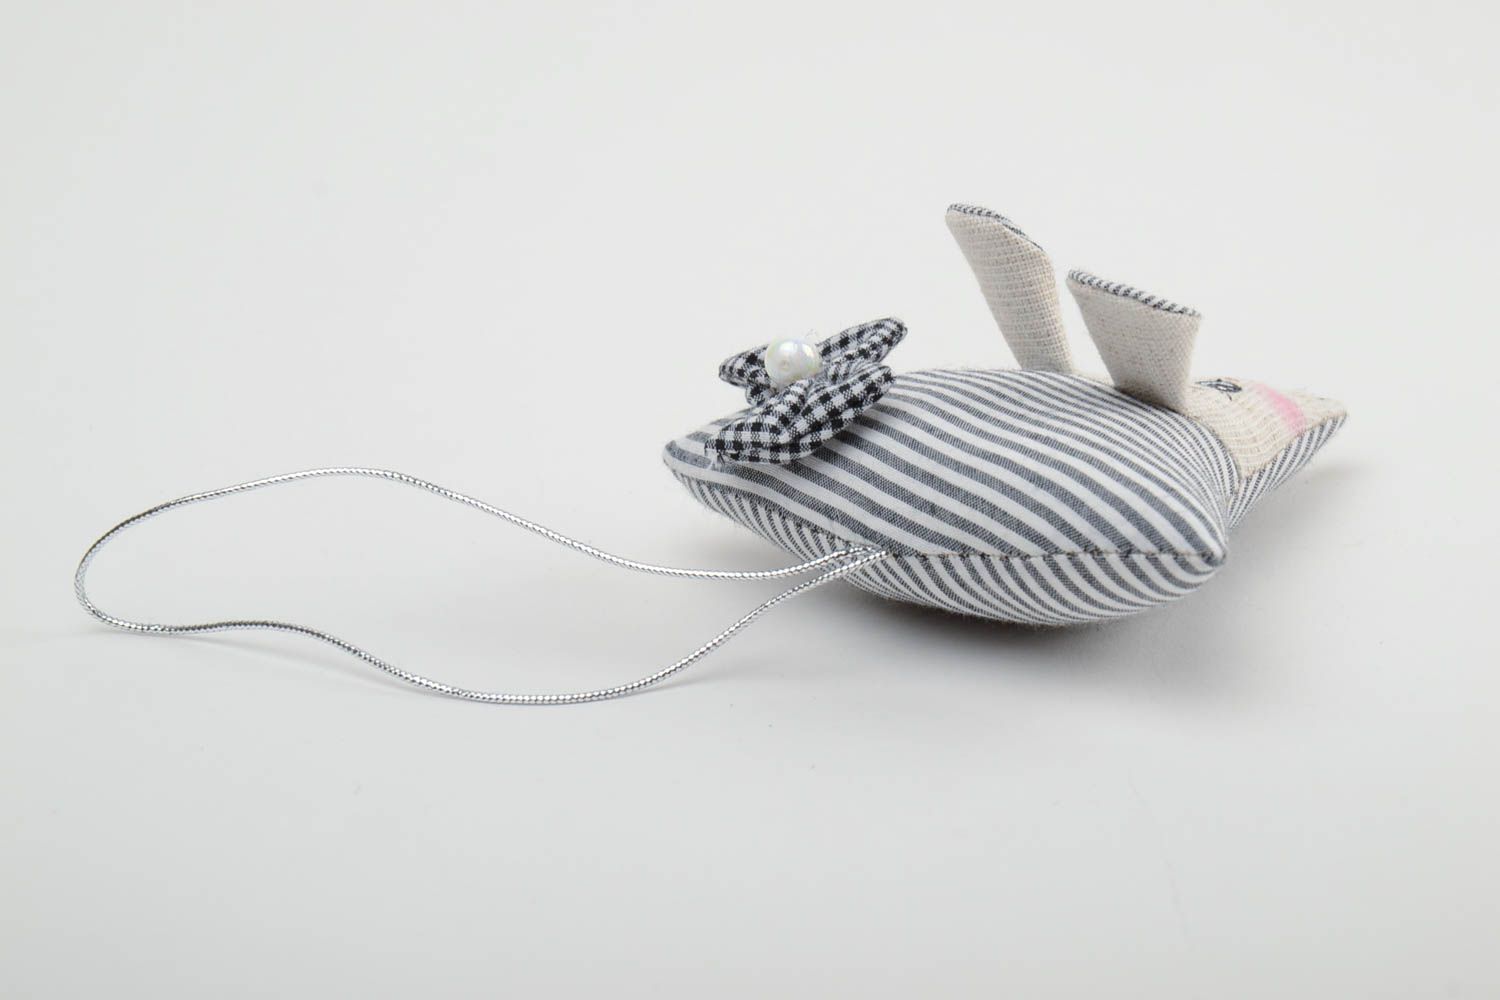 Интерьерная подвеска мышка из ткани игрушка для дома ручной работы милая фото 3